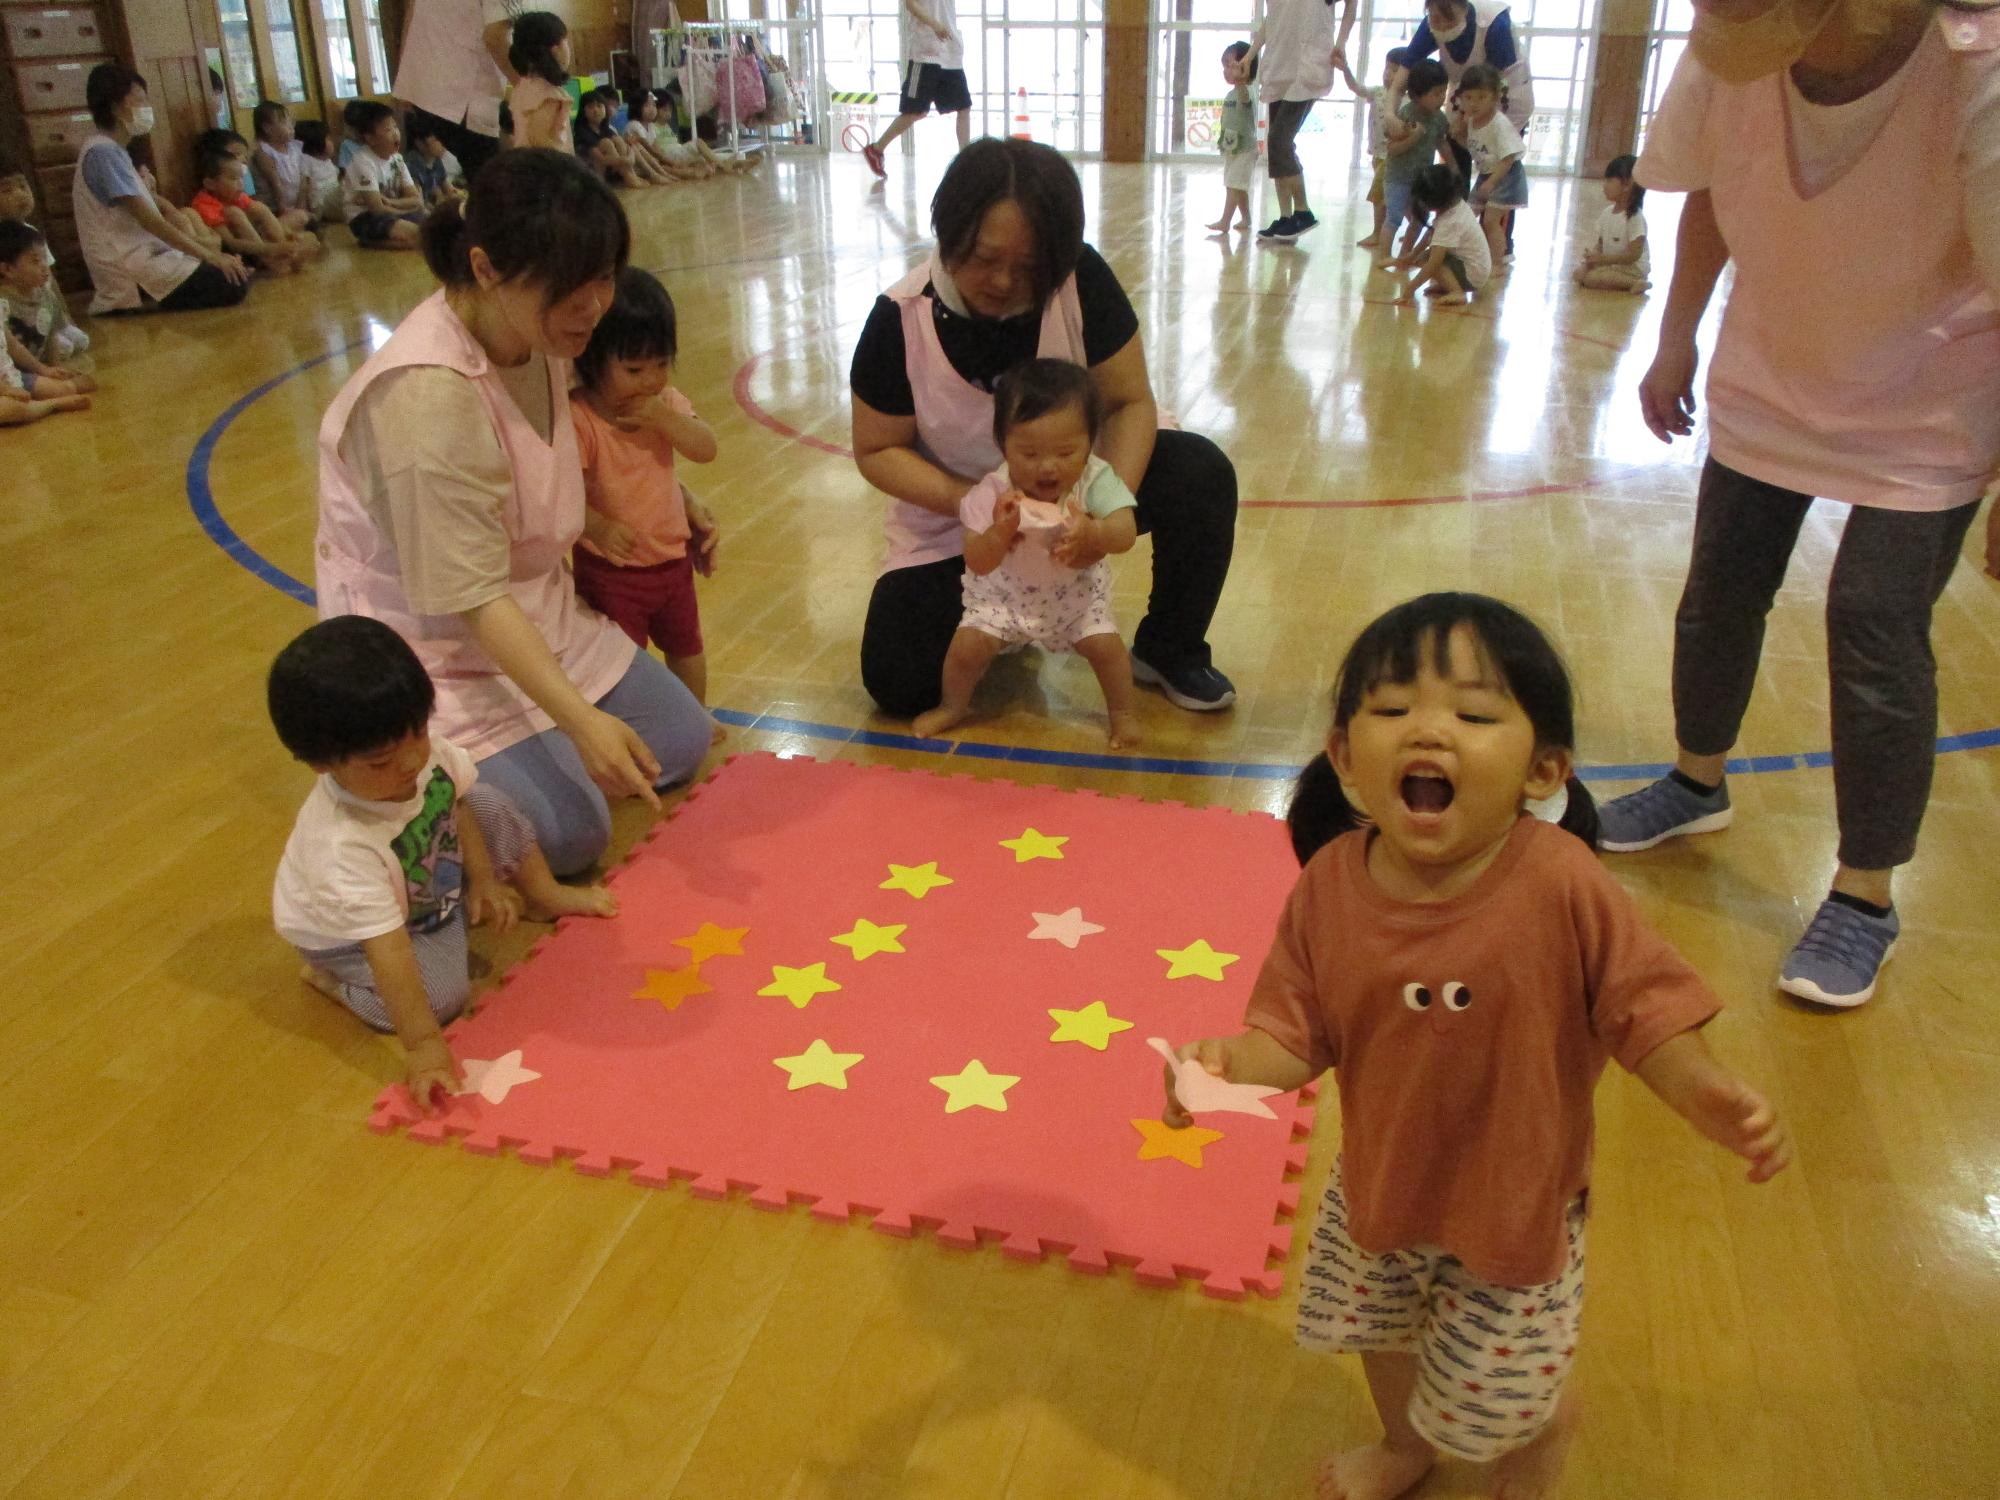 写真：0・1歳児が、床に置いてある星型のカードを選んでいる様子